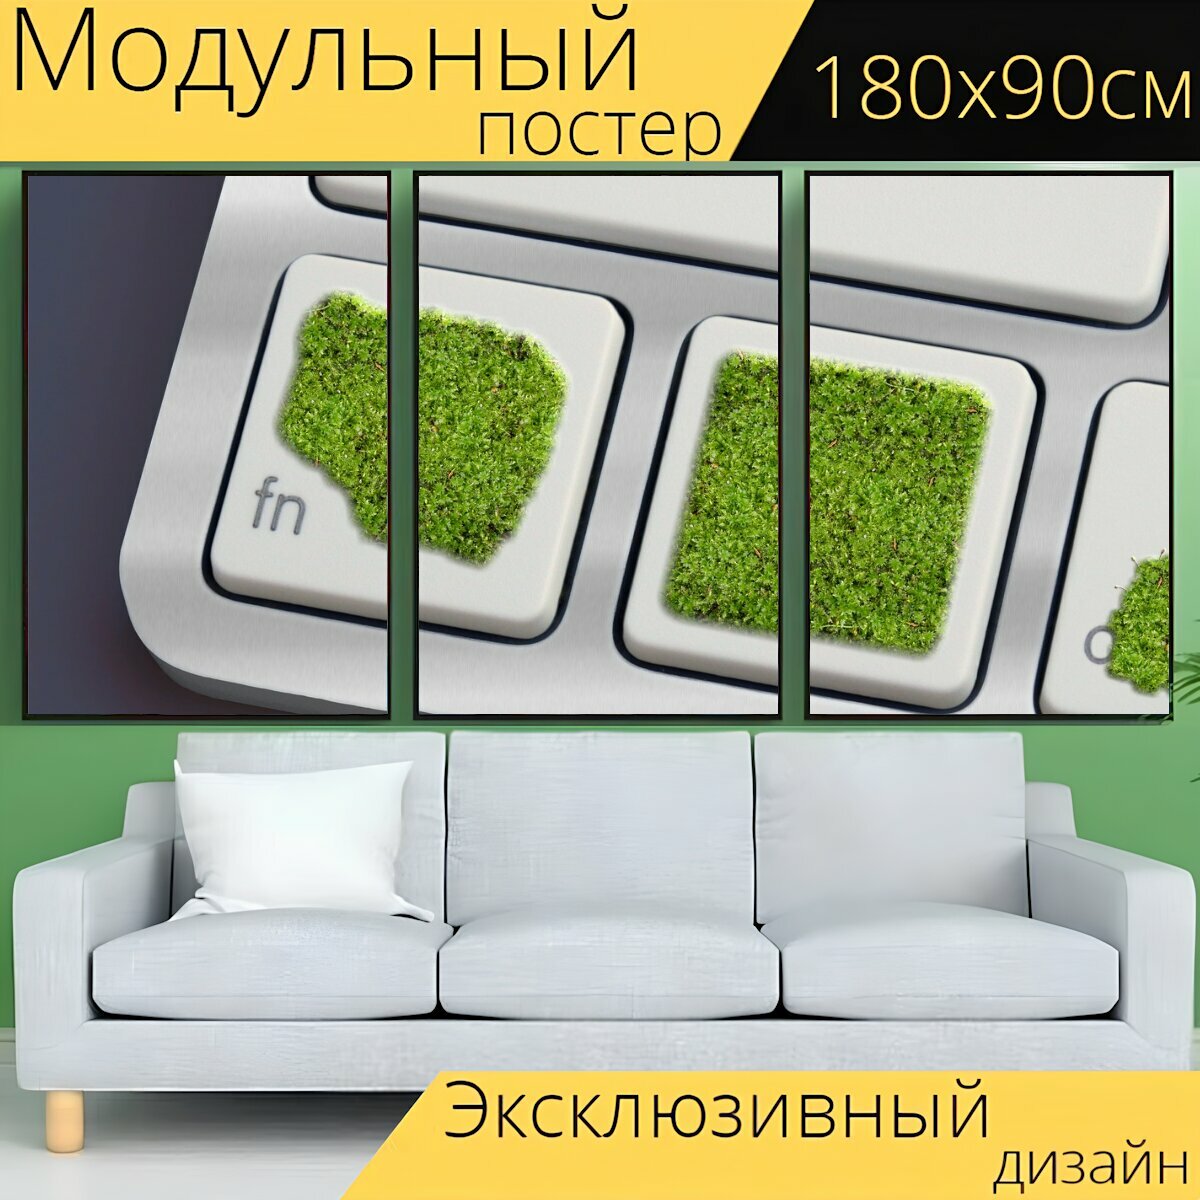 Модульный постер "Клавиатура, мох, зеленый" 180 x 90 см. для интерьера